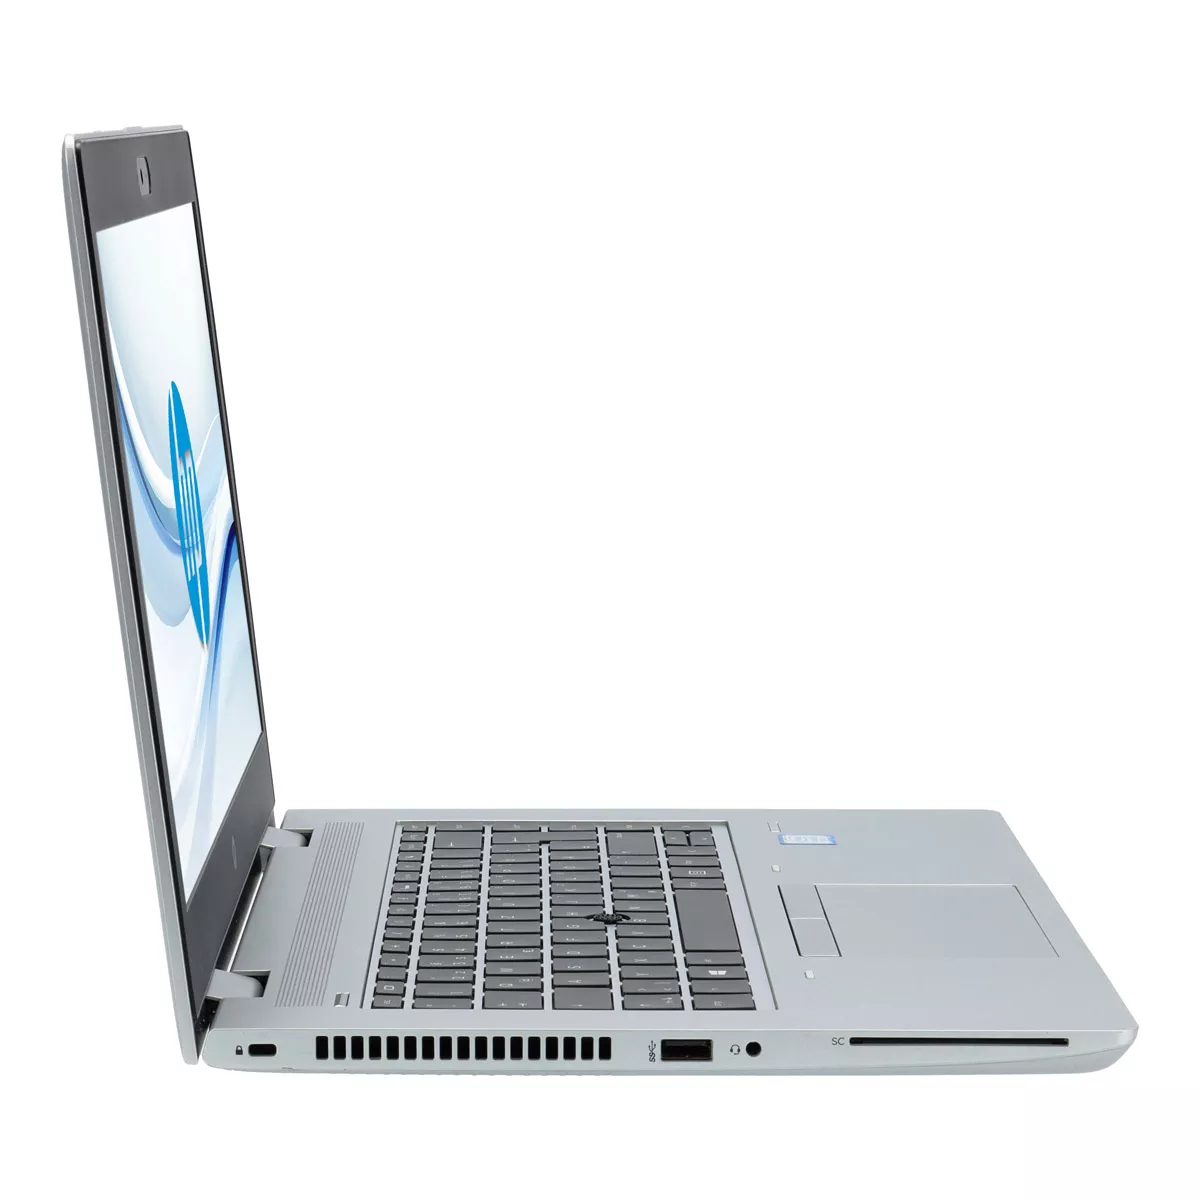 HP ProBook 640 G5 Core i7 8665U Full-HD 8 GB 240 GB M.2 nVME SSD Webcam A+